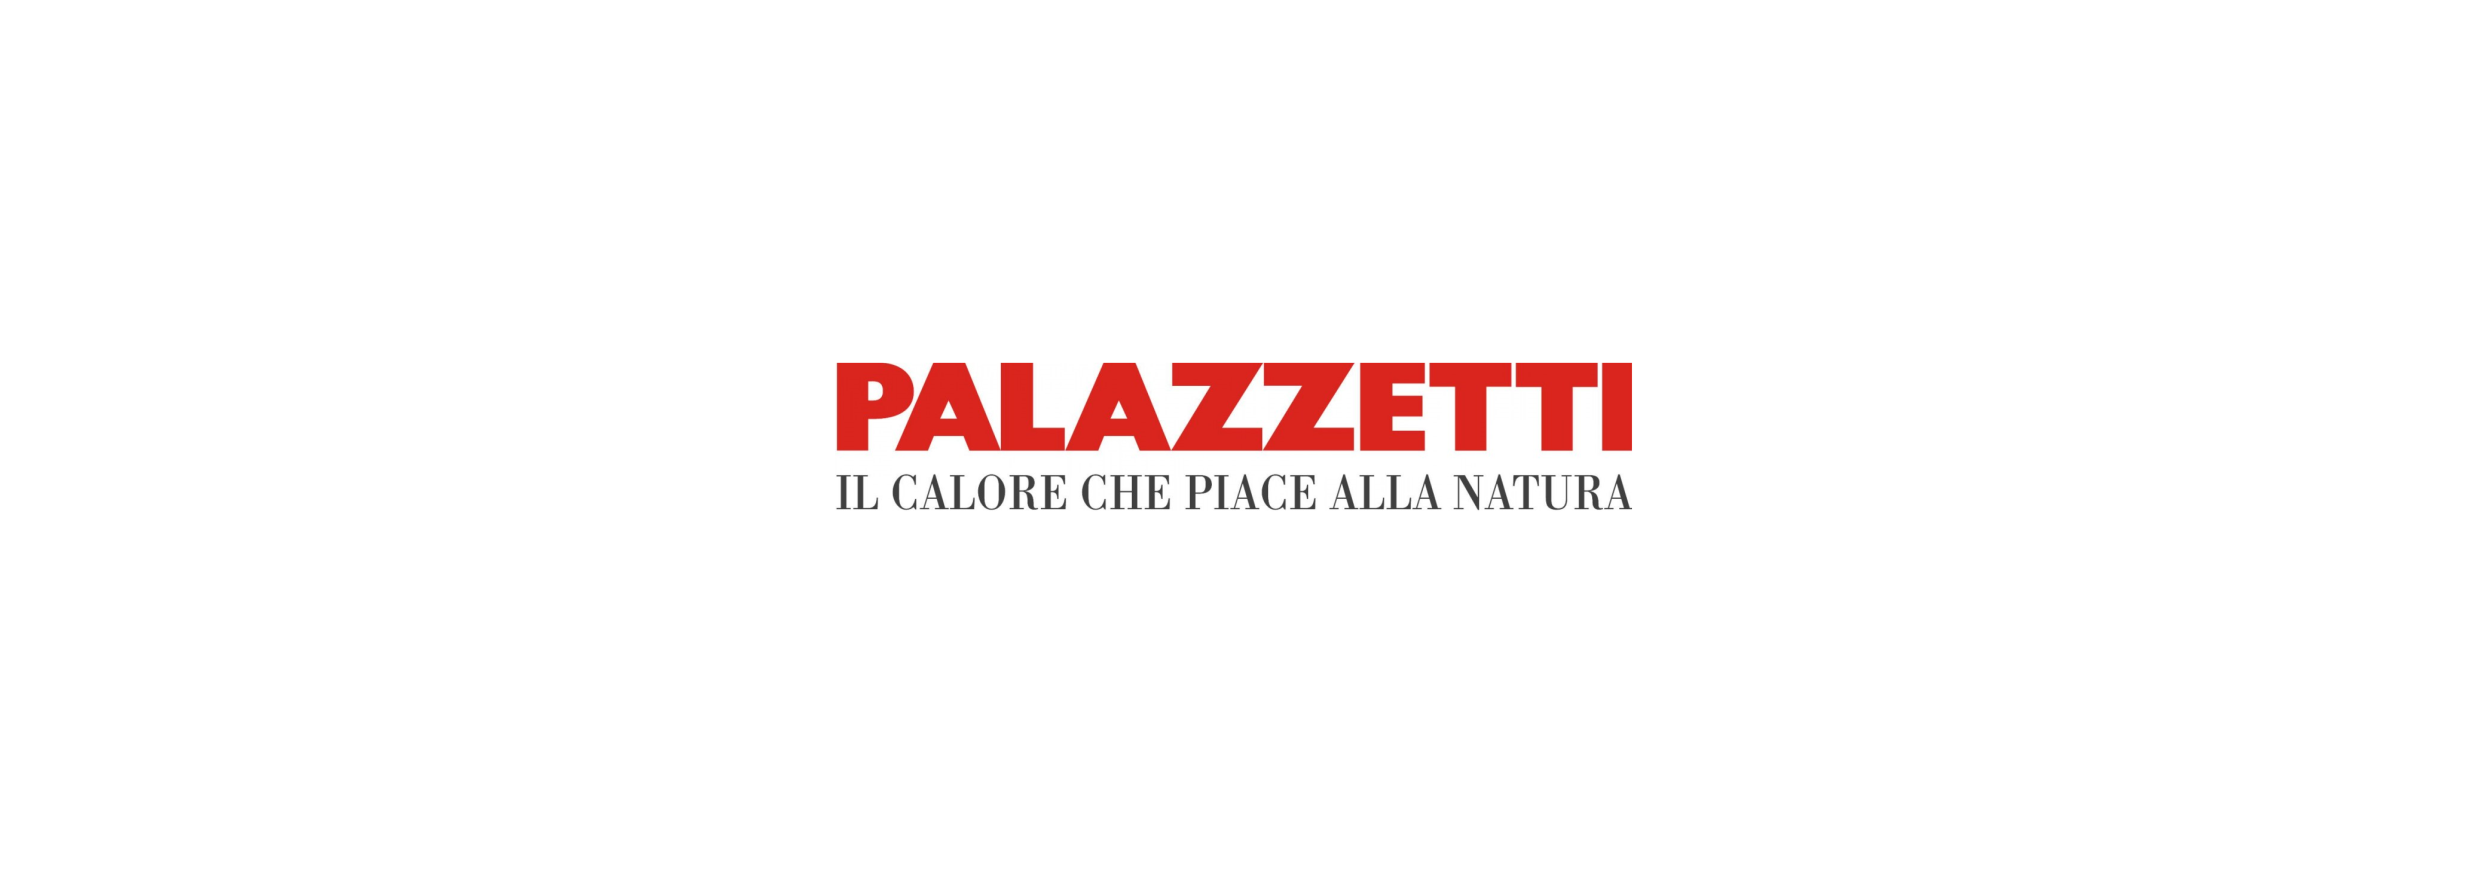 Logotipo da Palazzetti